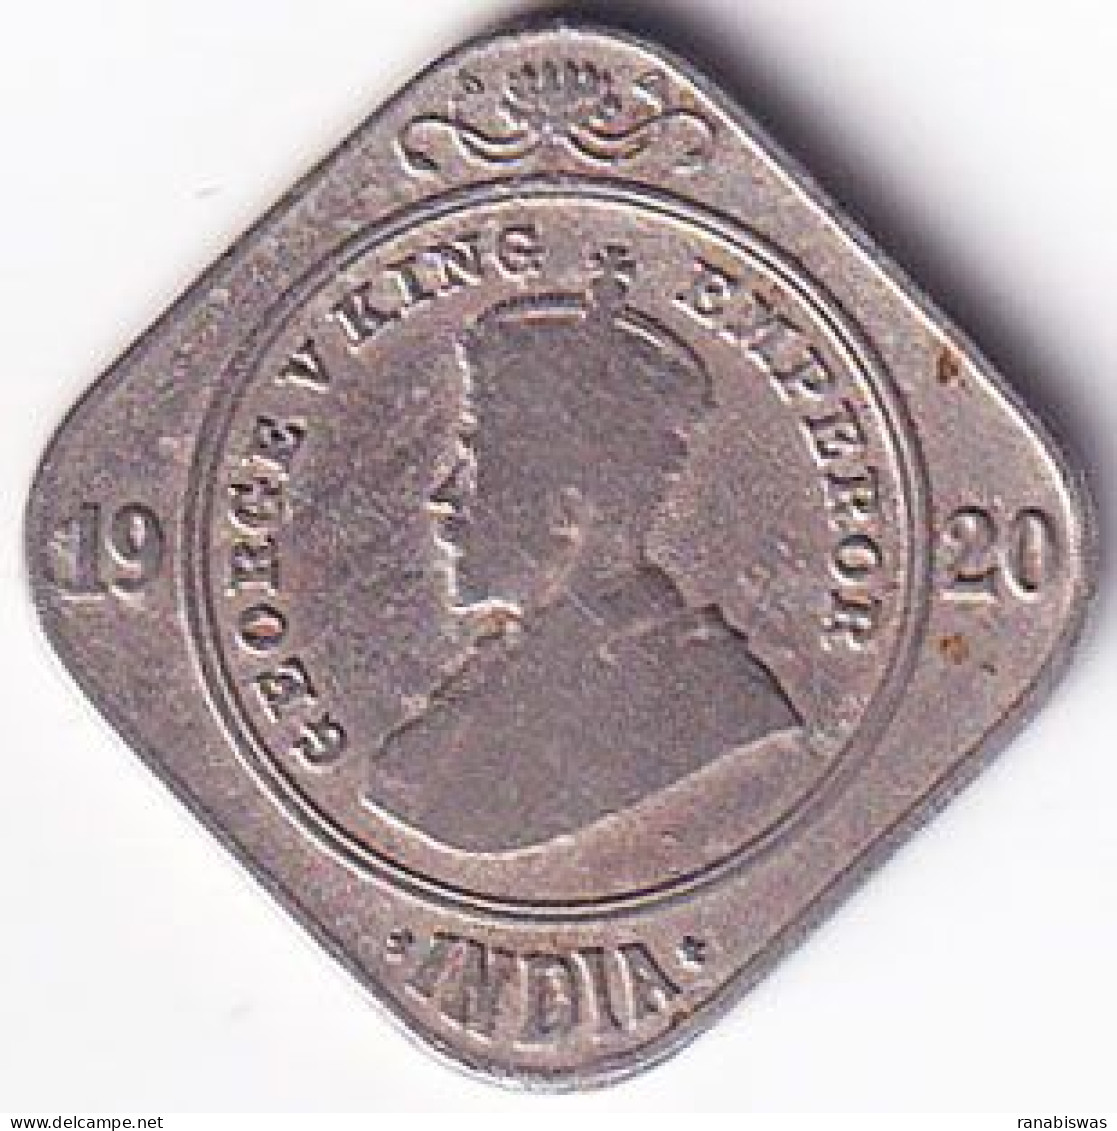 INDIA COIN LOT 174, 2 ANNAS 1920, CALCUTTA MINT, XF, RARE - Indien